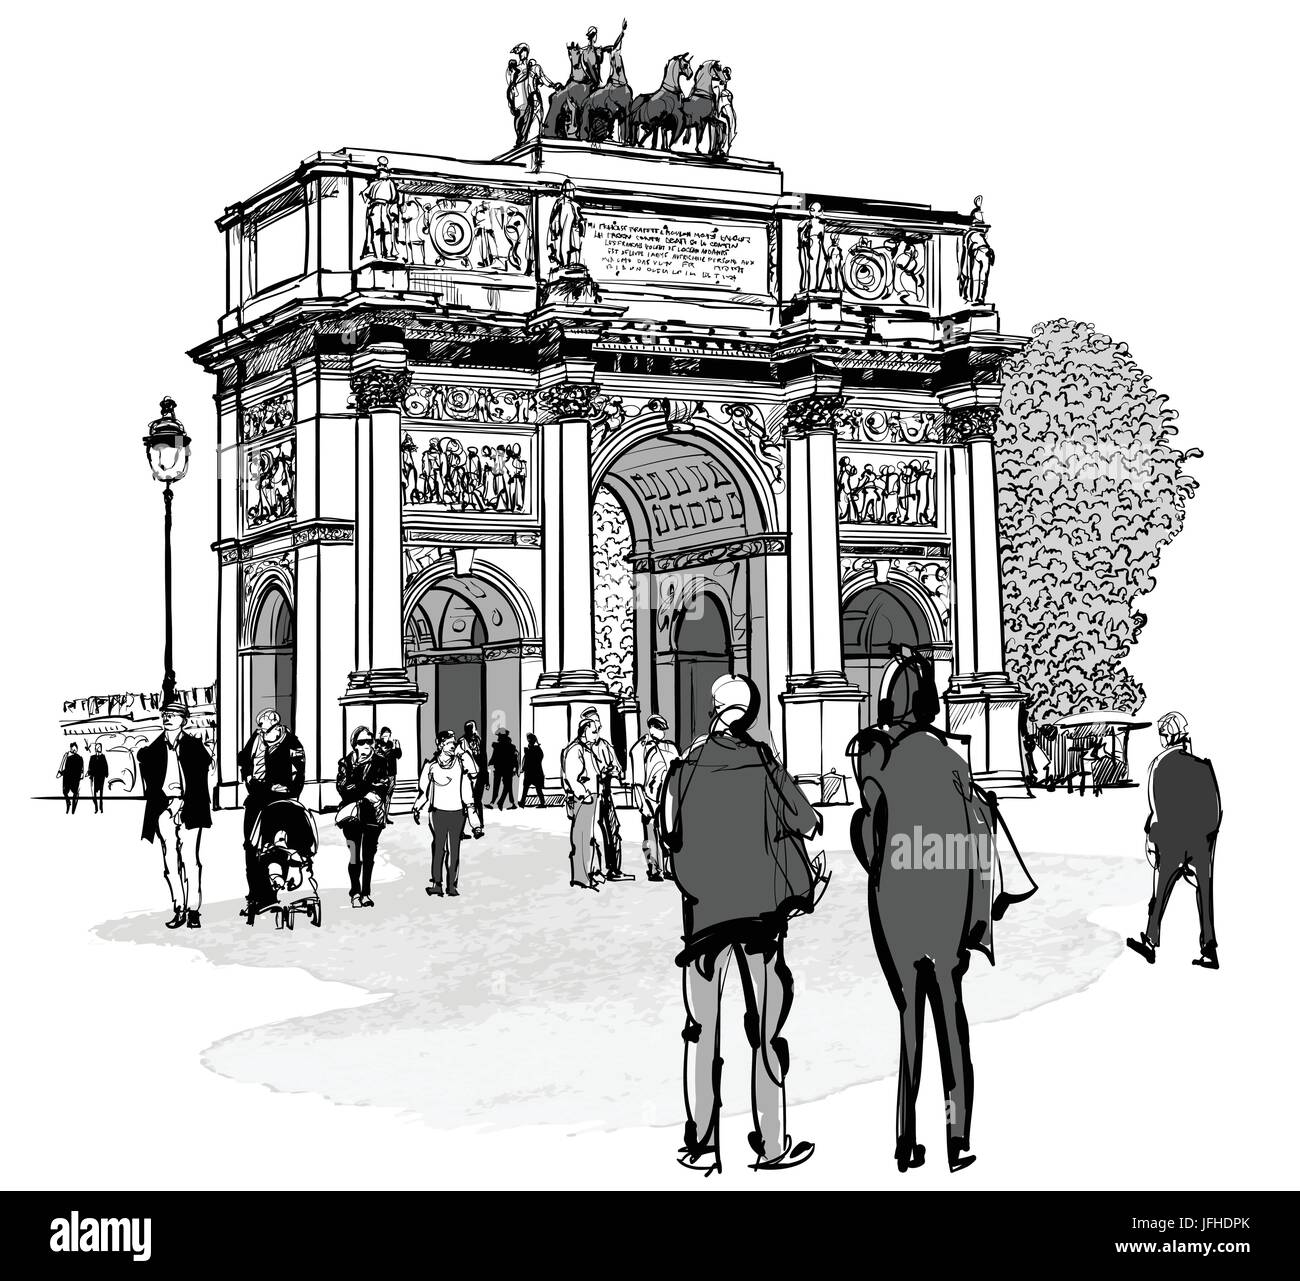 Bogen der Triumph Karussell und Tuileries Garten in Paris - Vektor-illustration Stock Vektor